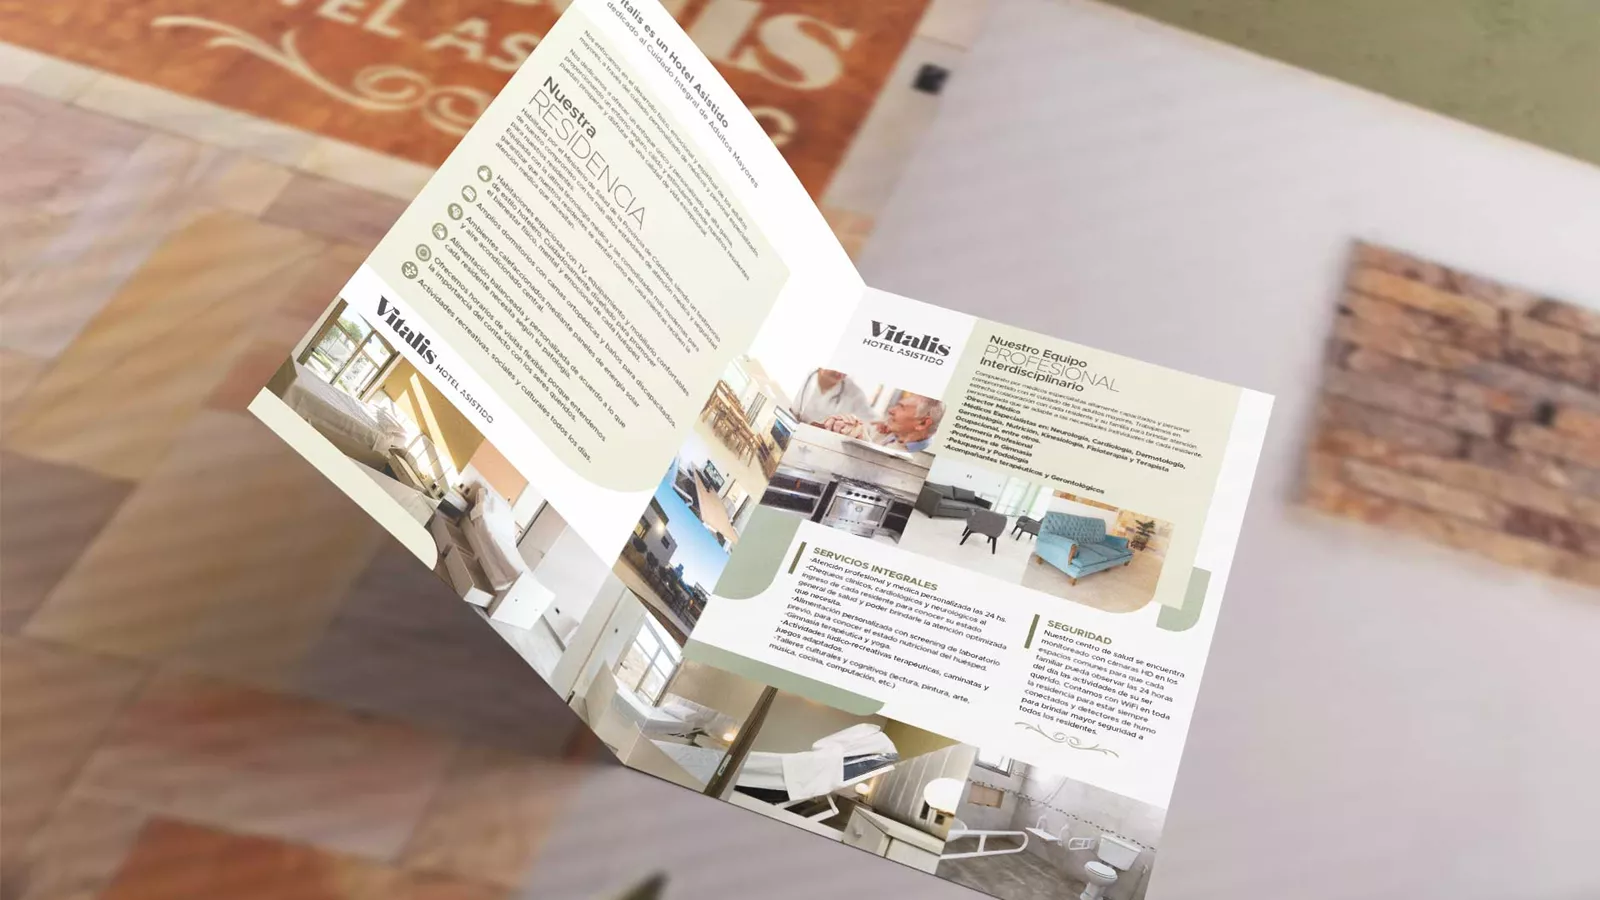 Desarrollo de brochure y comercial audiovisual para Vitalis, hotel asistido. Porteña (Córdoba)